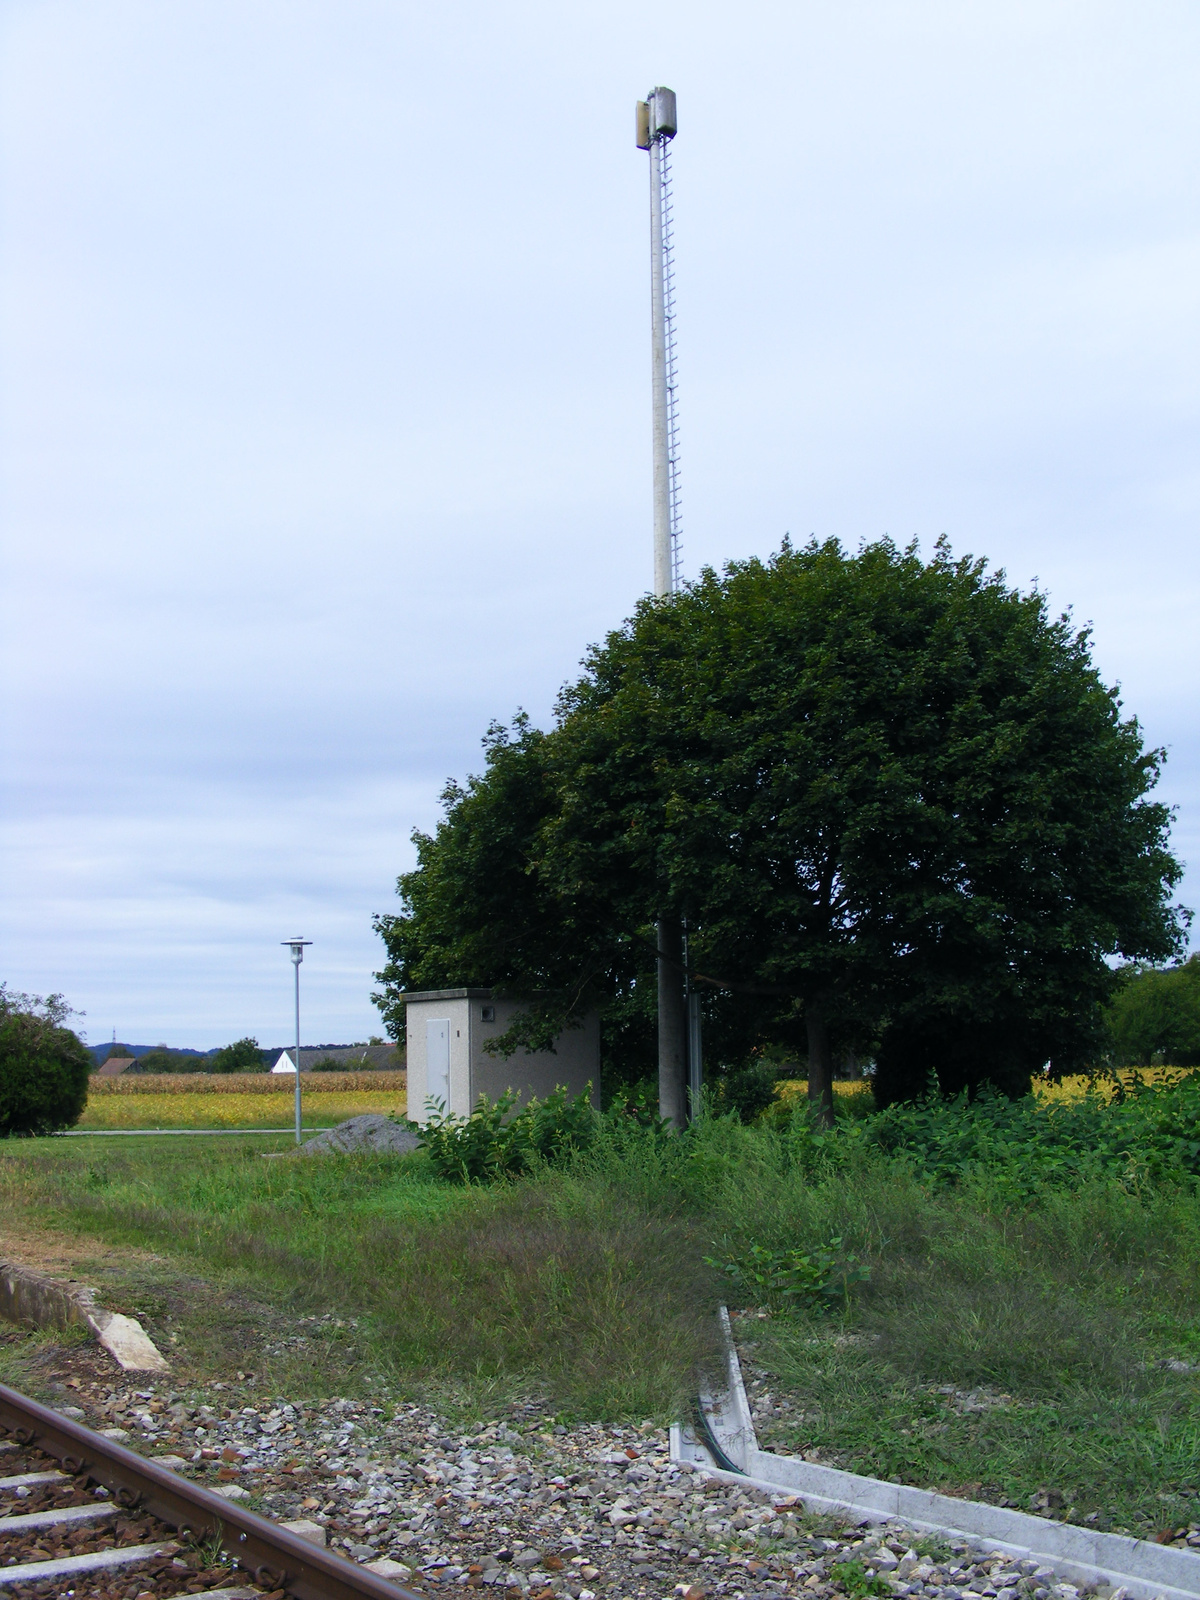 Az egykori megállóhelynél lévő vasúti rádió átjátszó antenna.